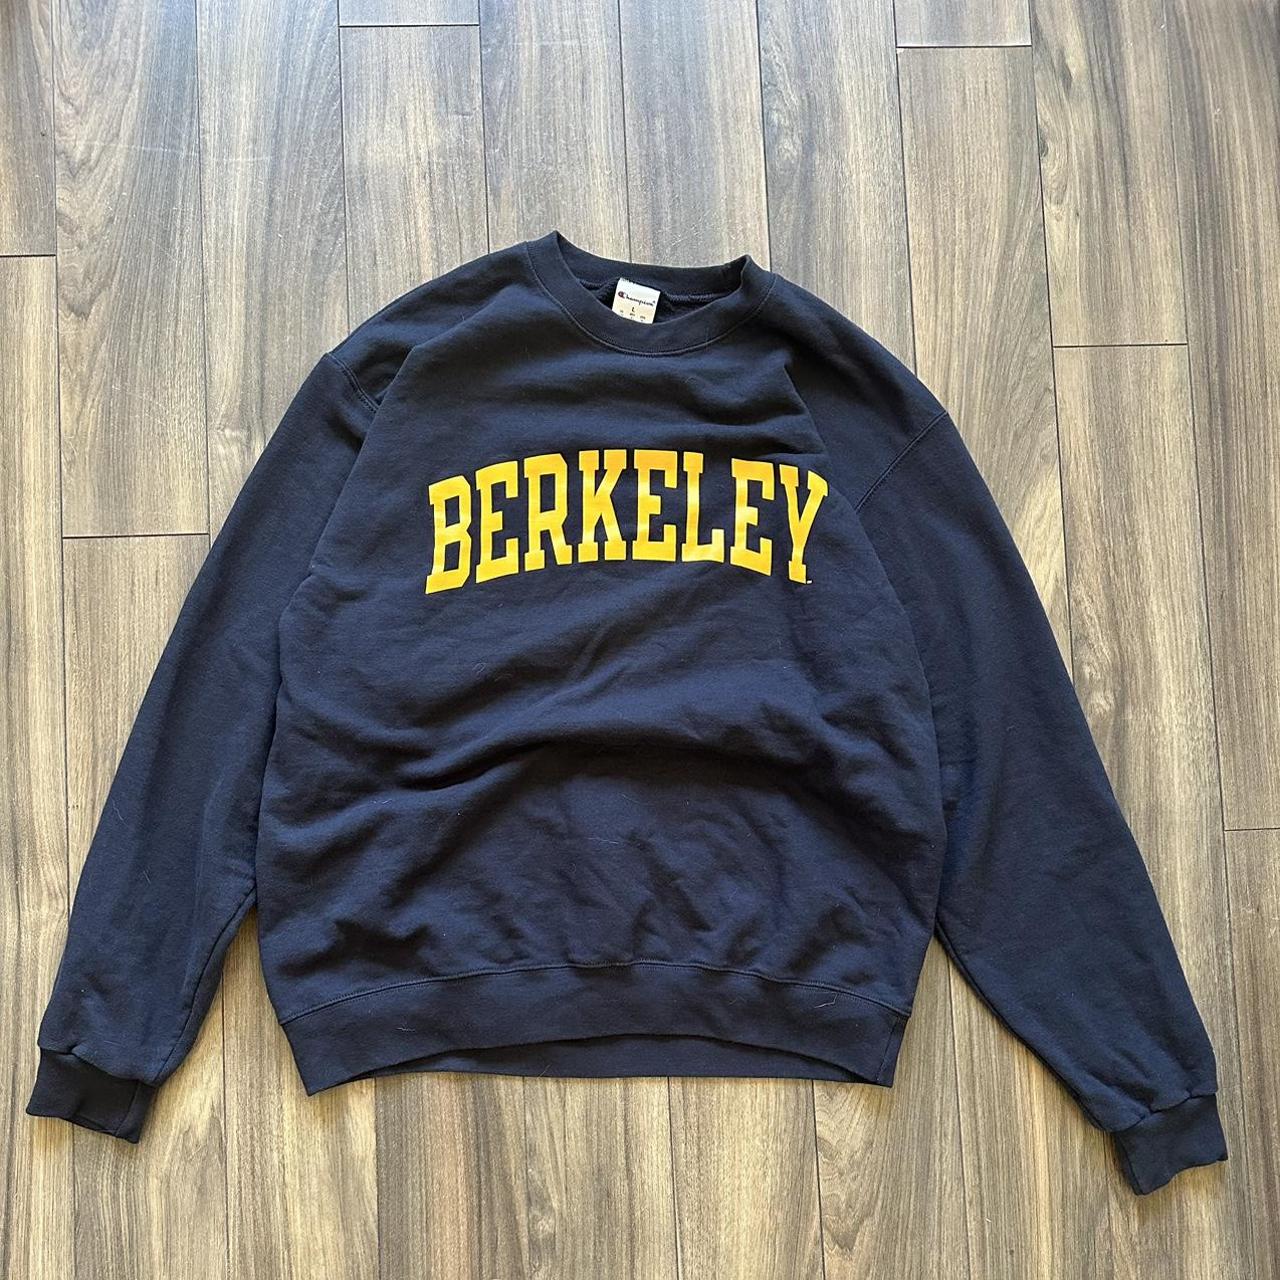 Berkeley sweatshirt •Size: Large #college... - Depop